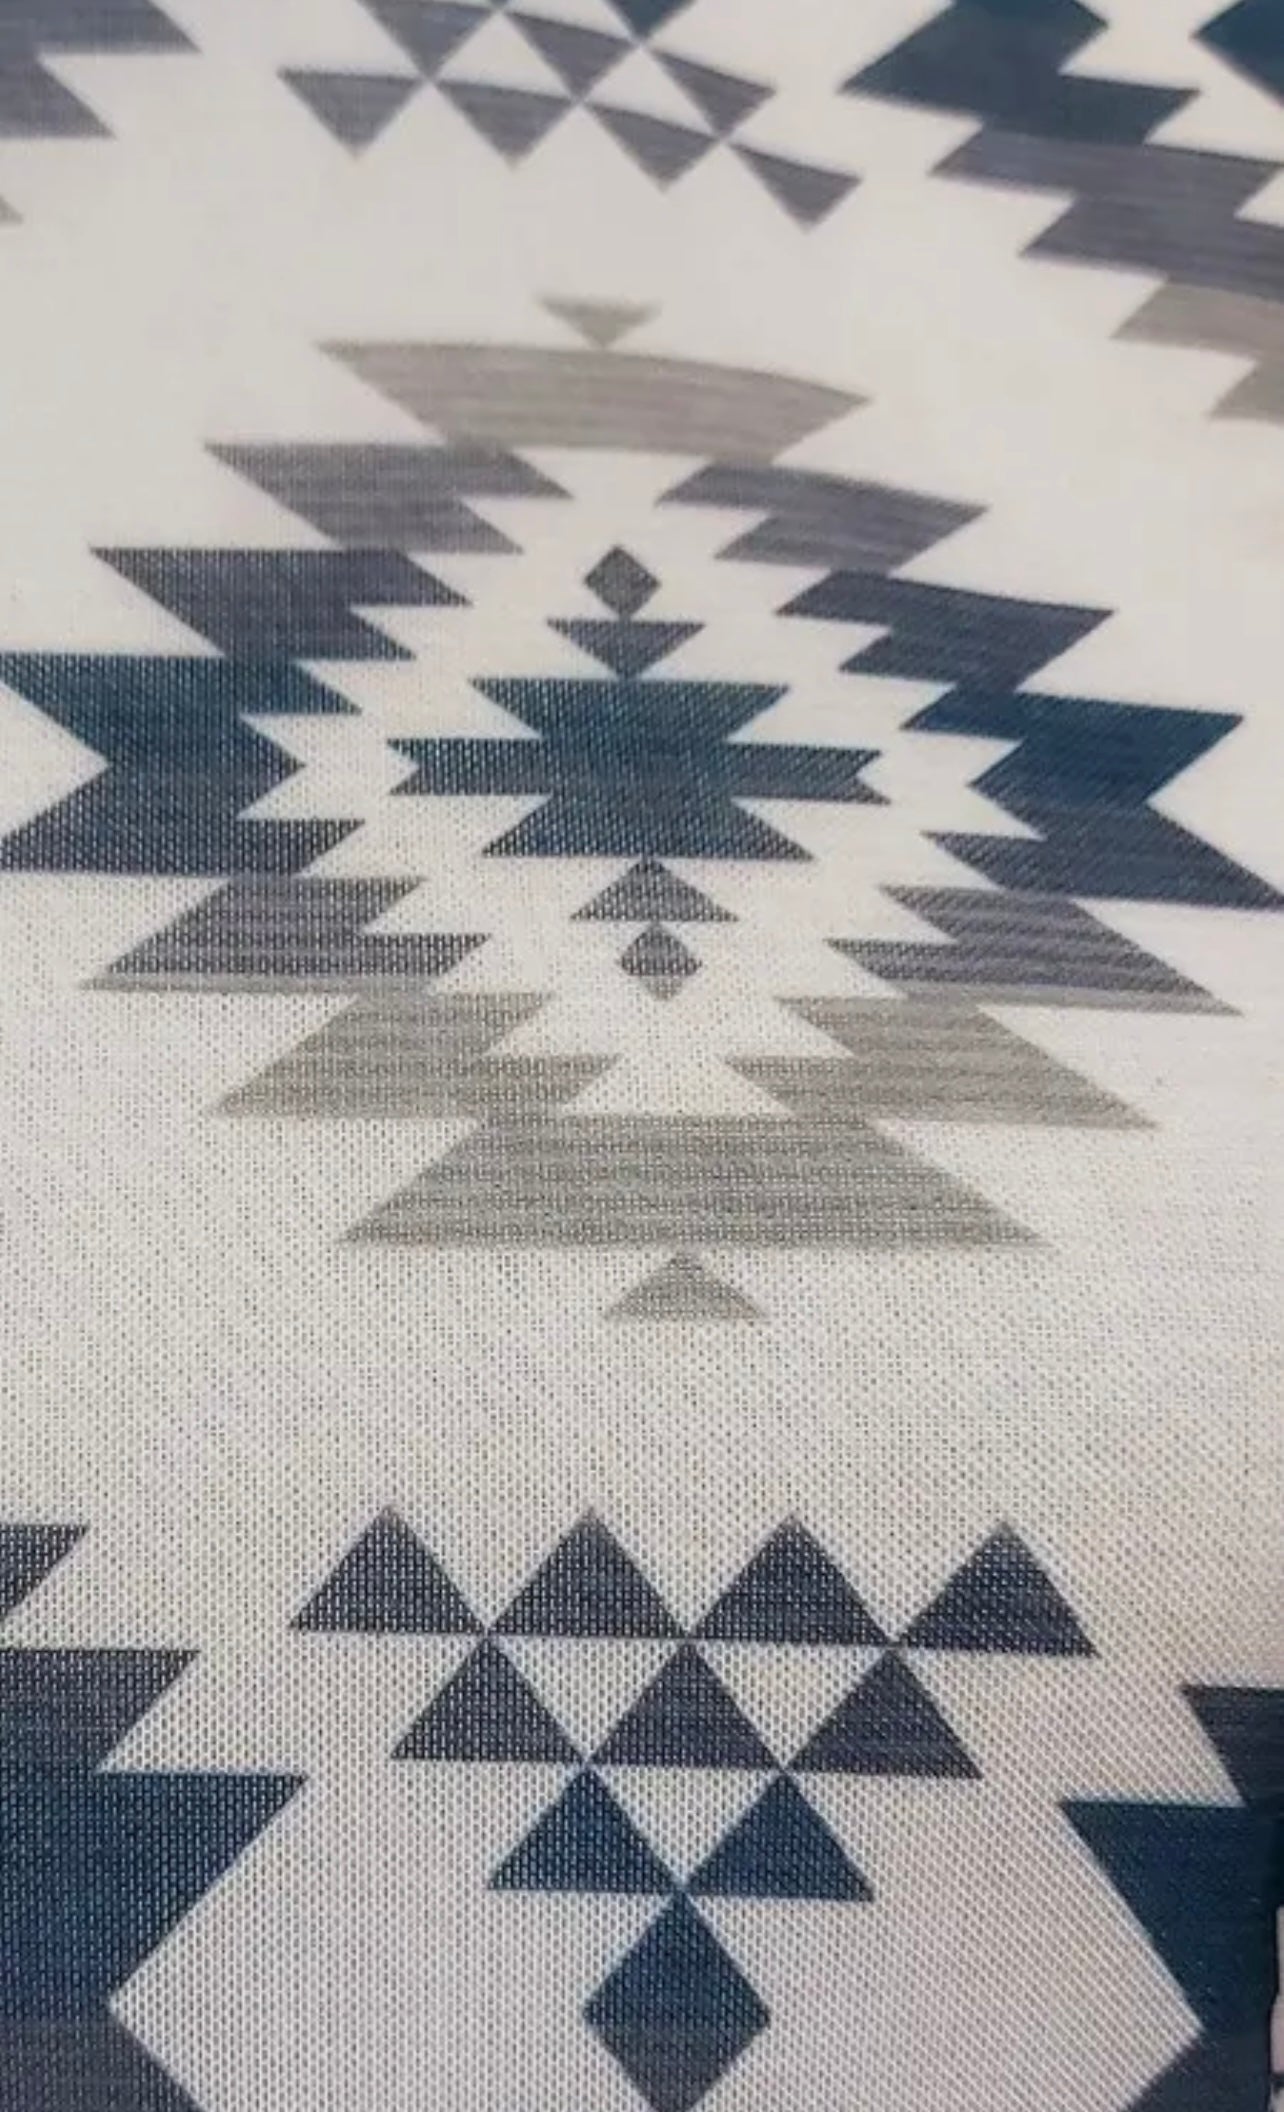 Avery MAYA Aztec Print Semi Sheer
Mesh Top